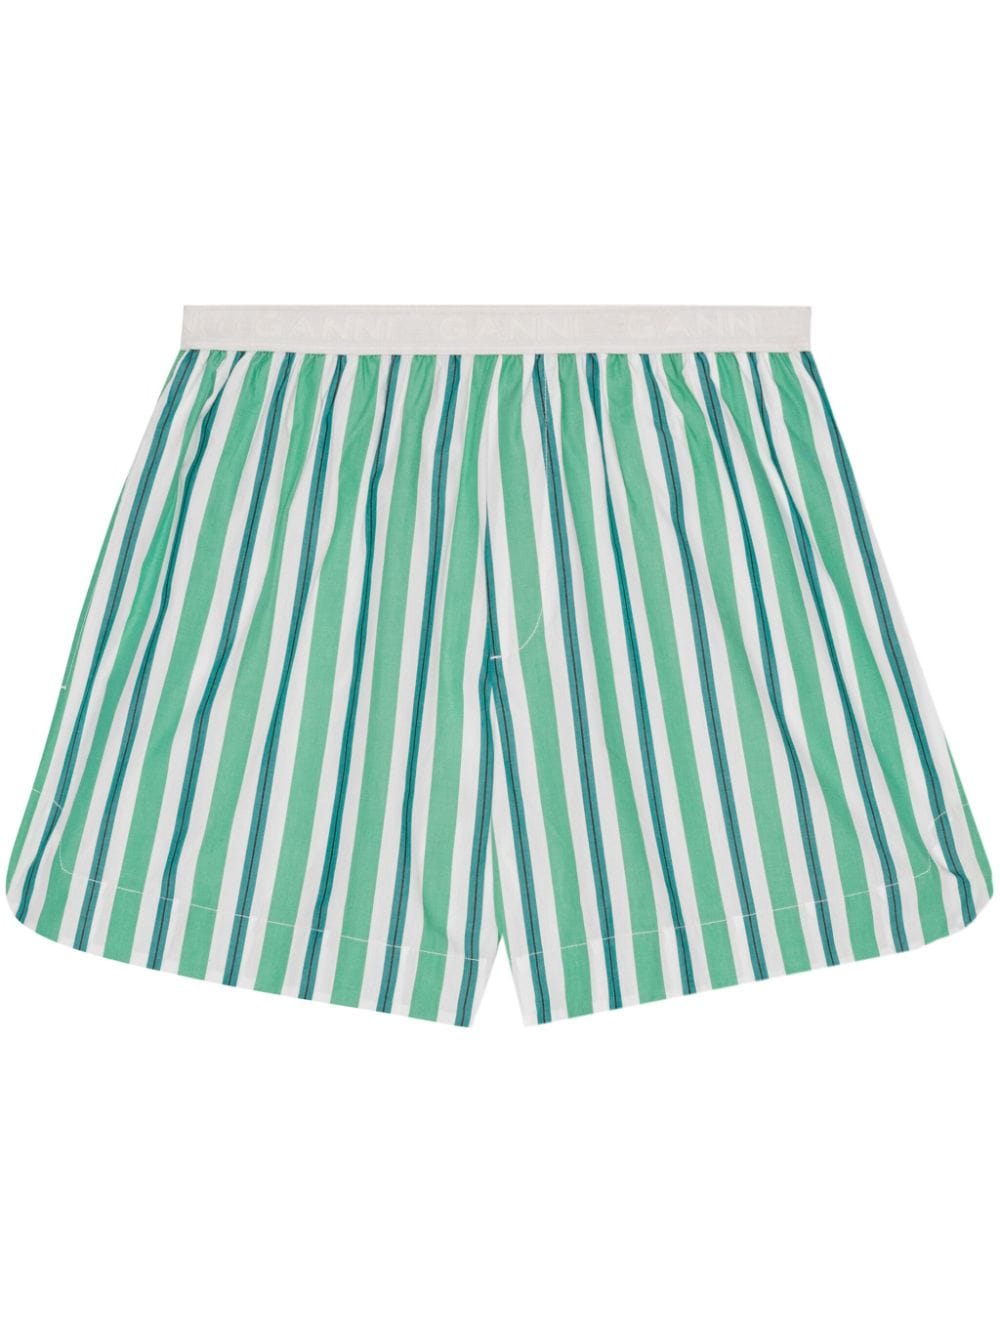 Striped cotton mini shorts<BR/><BR/><BR/><BR/>